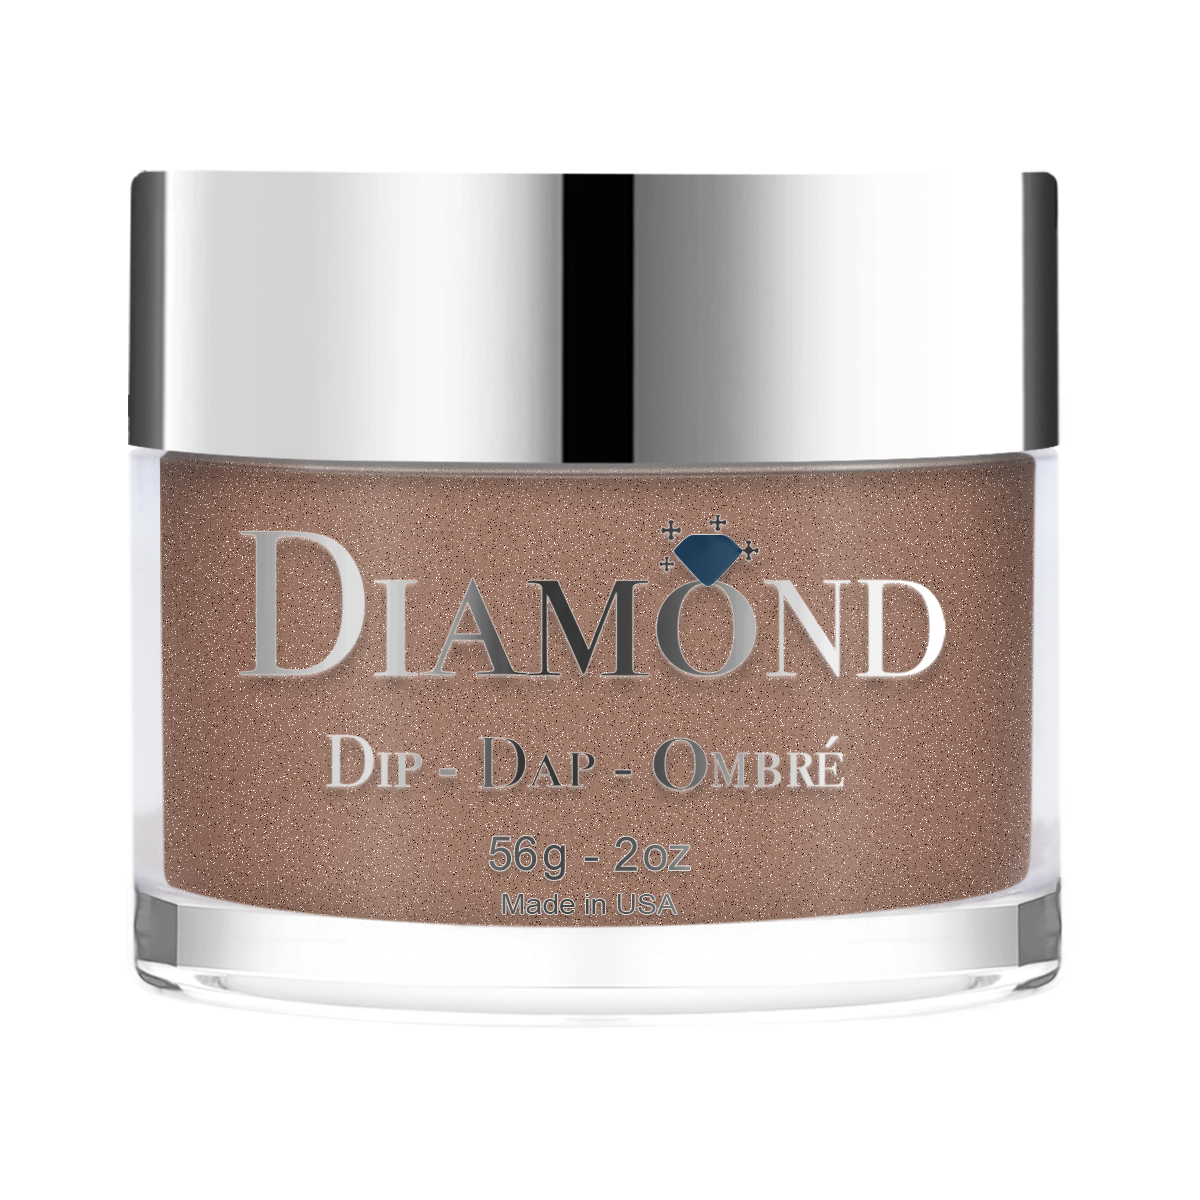 Diamond Dip & Dap Ombre Powder - 134